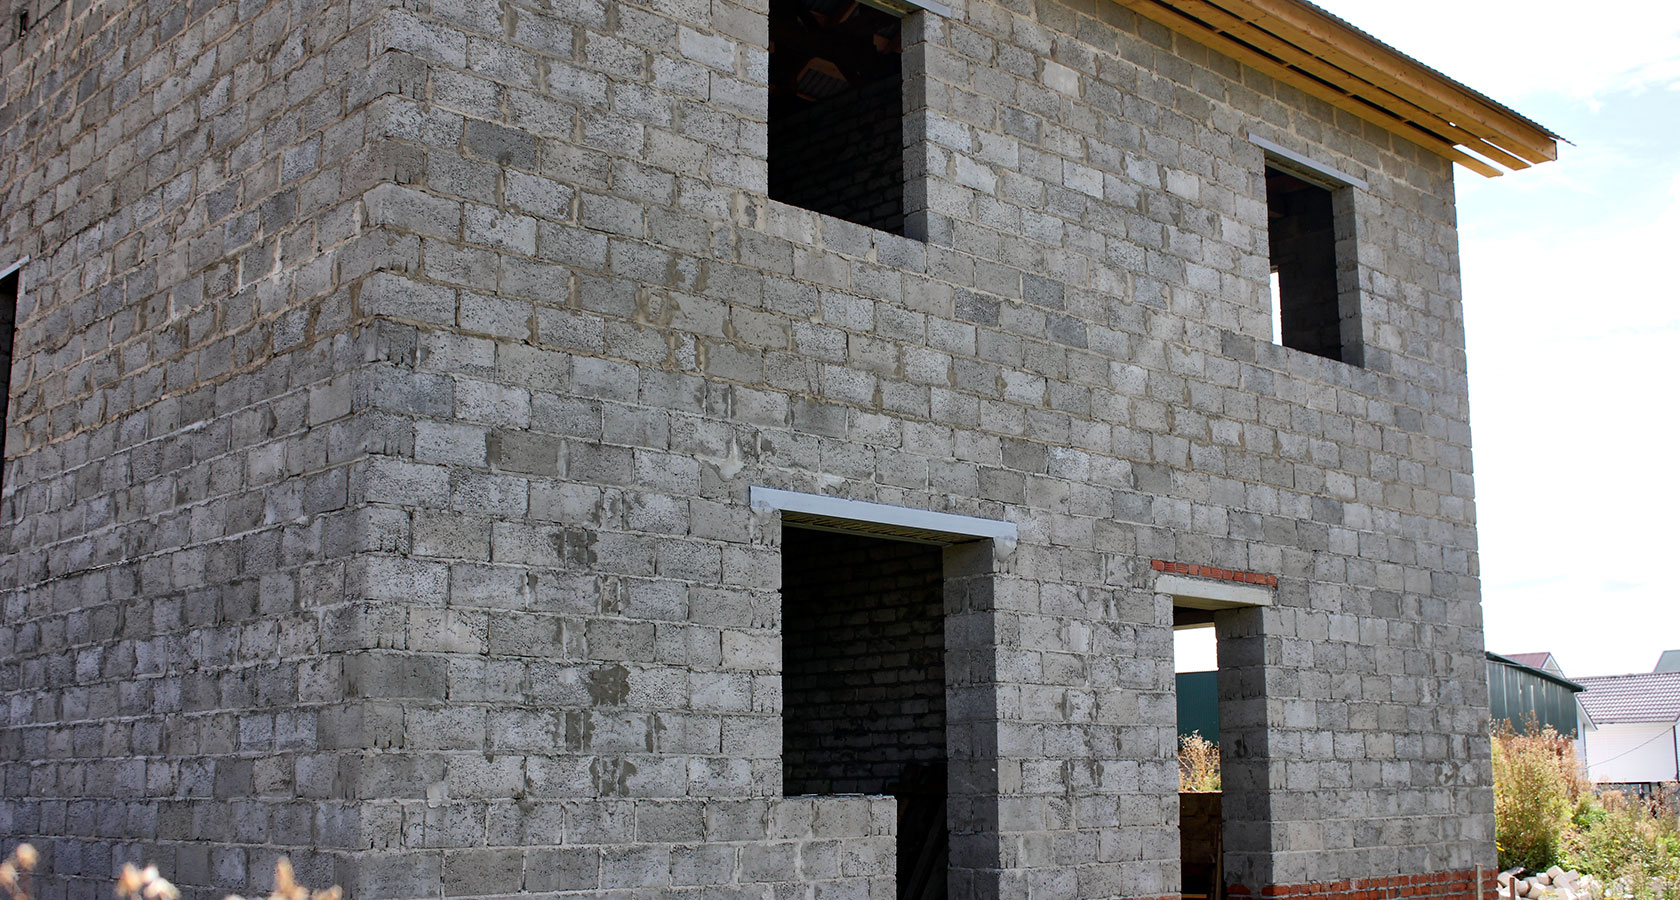  керамзитобетонные блоки использовать для несущих стен: плюсы и .